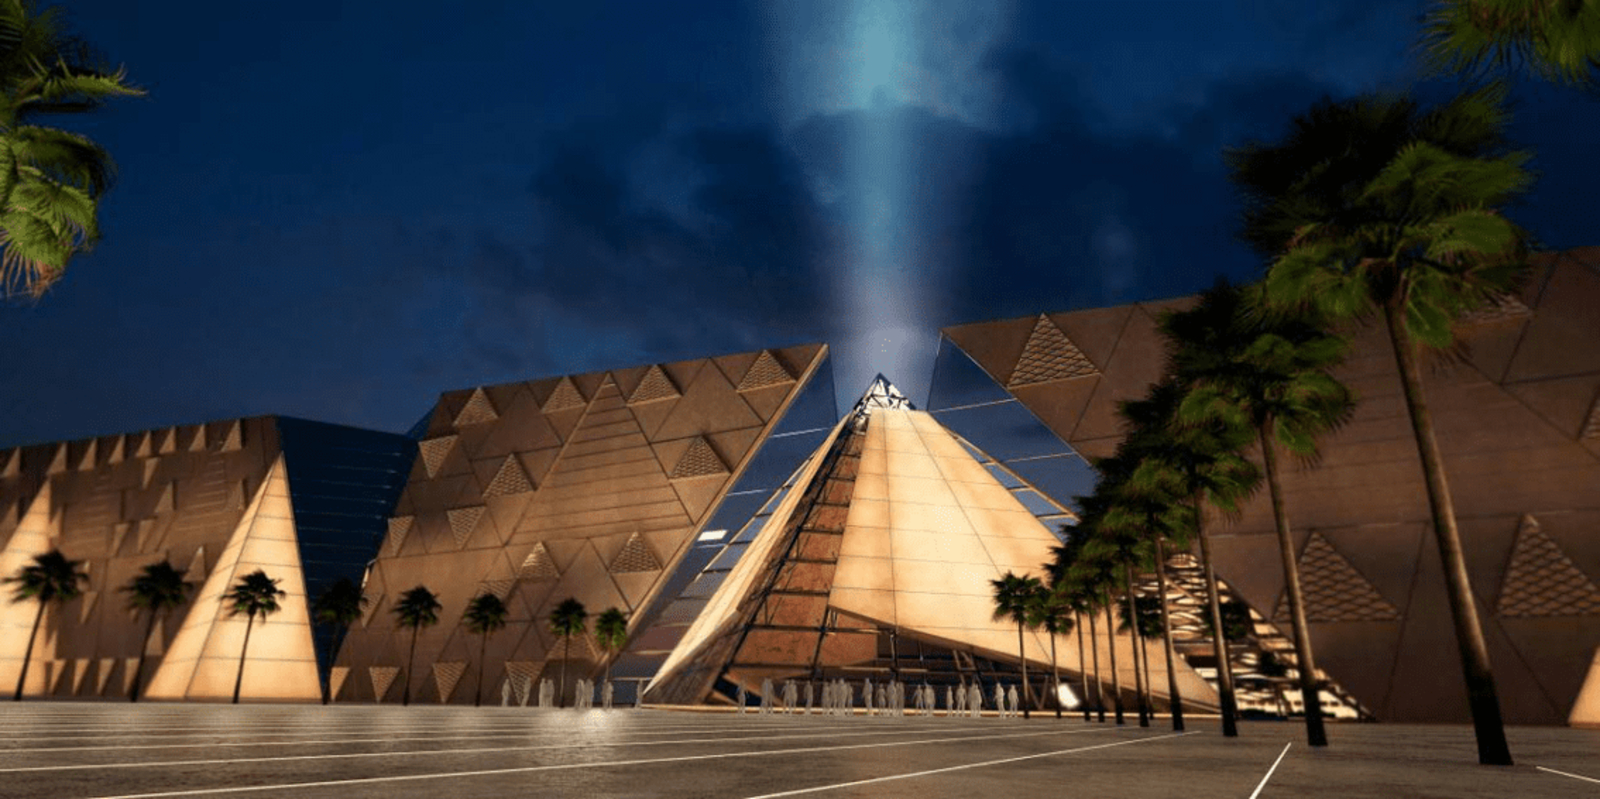 المتحف المصري الكبير يفتح أبوابه في النصف الثاني من 2022 | انتربرايز